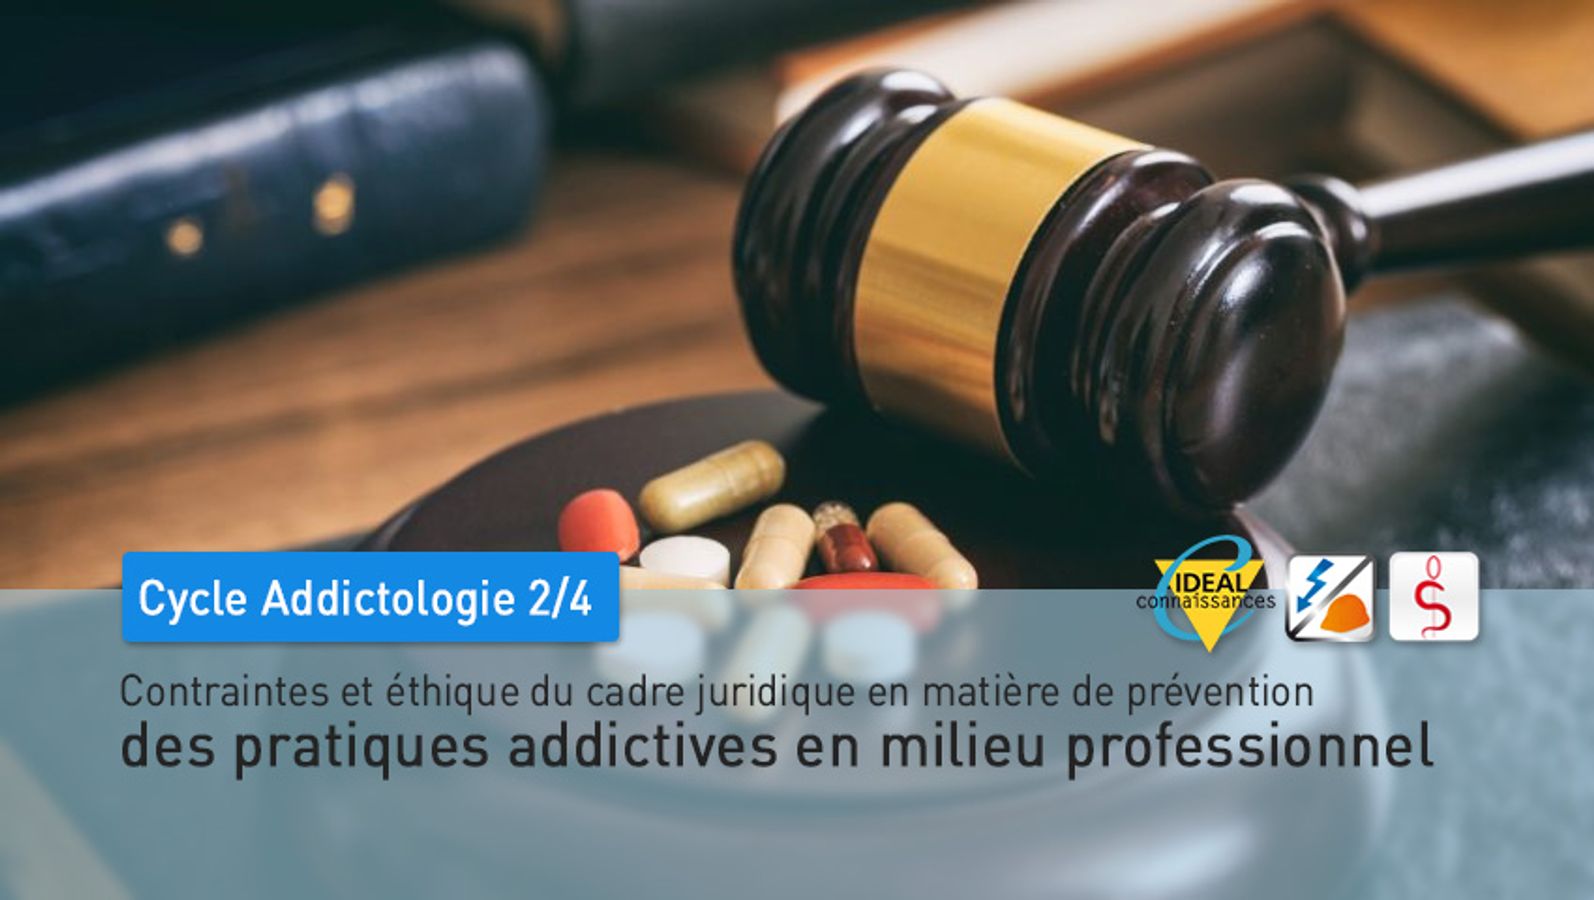 Cycle Addictologie - 2/4 - Contraintes et éthique du cadre juridique en matière de prévention des pratiques addictives en milieu professionnel